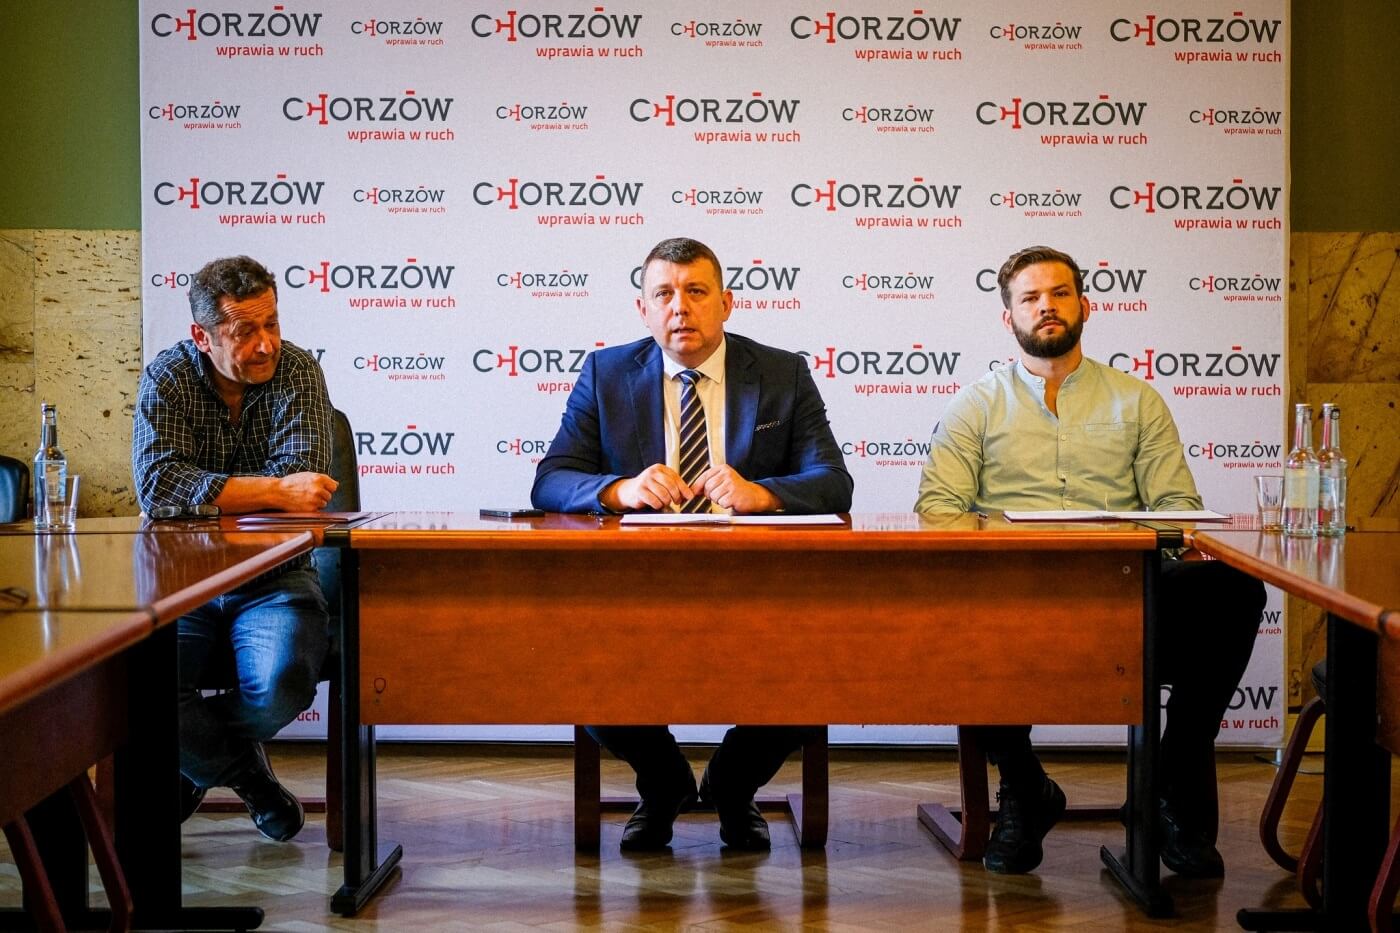 Program Ciepłe Mieszkanie W Chorzowie podpisano pierwsze umowy 2